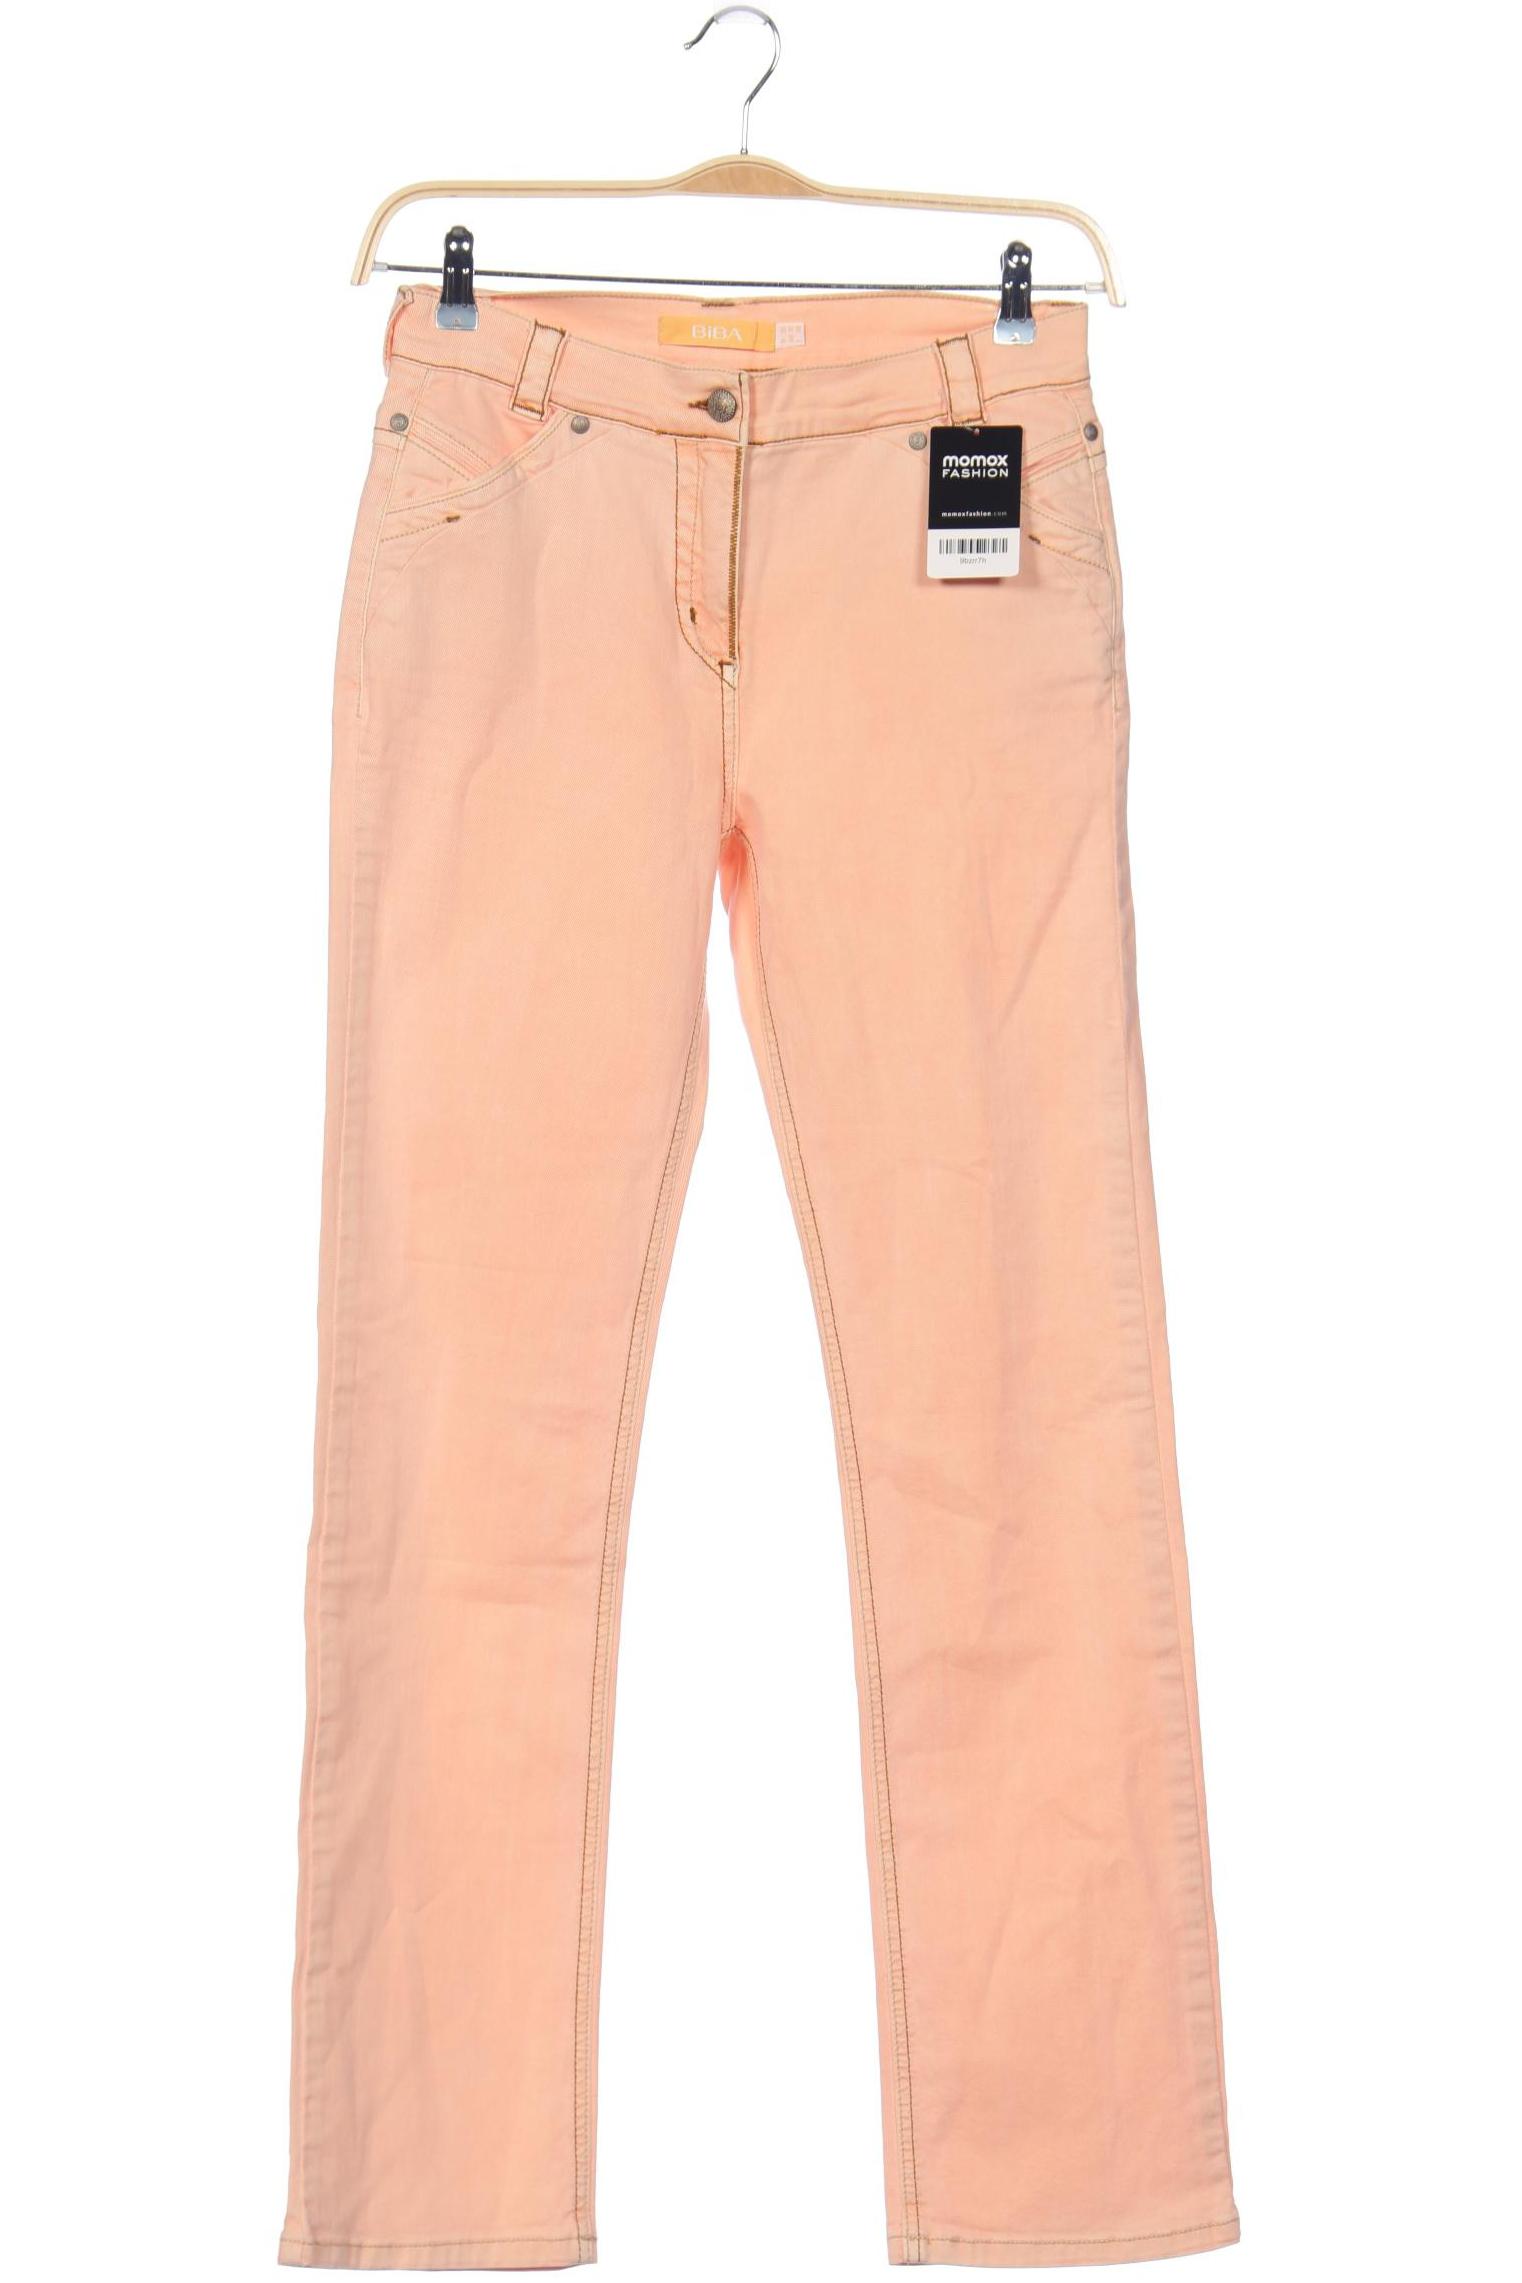 BiBA Damen Jeans, orange, Gr. 36 von BiBA